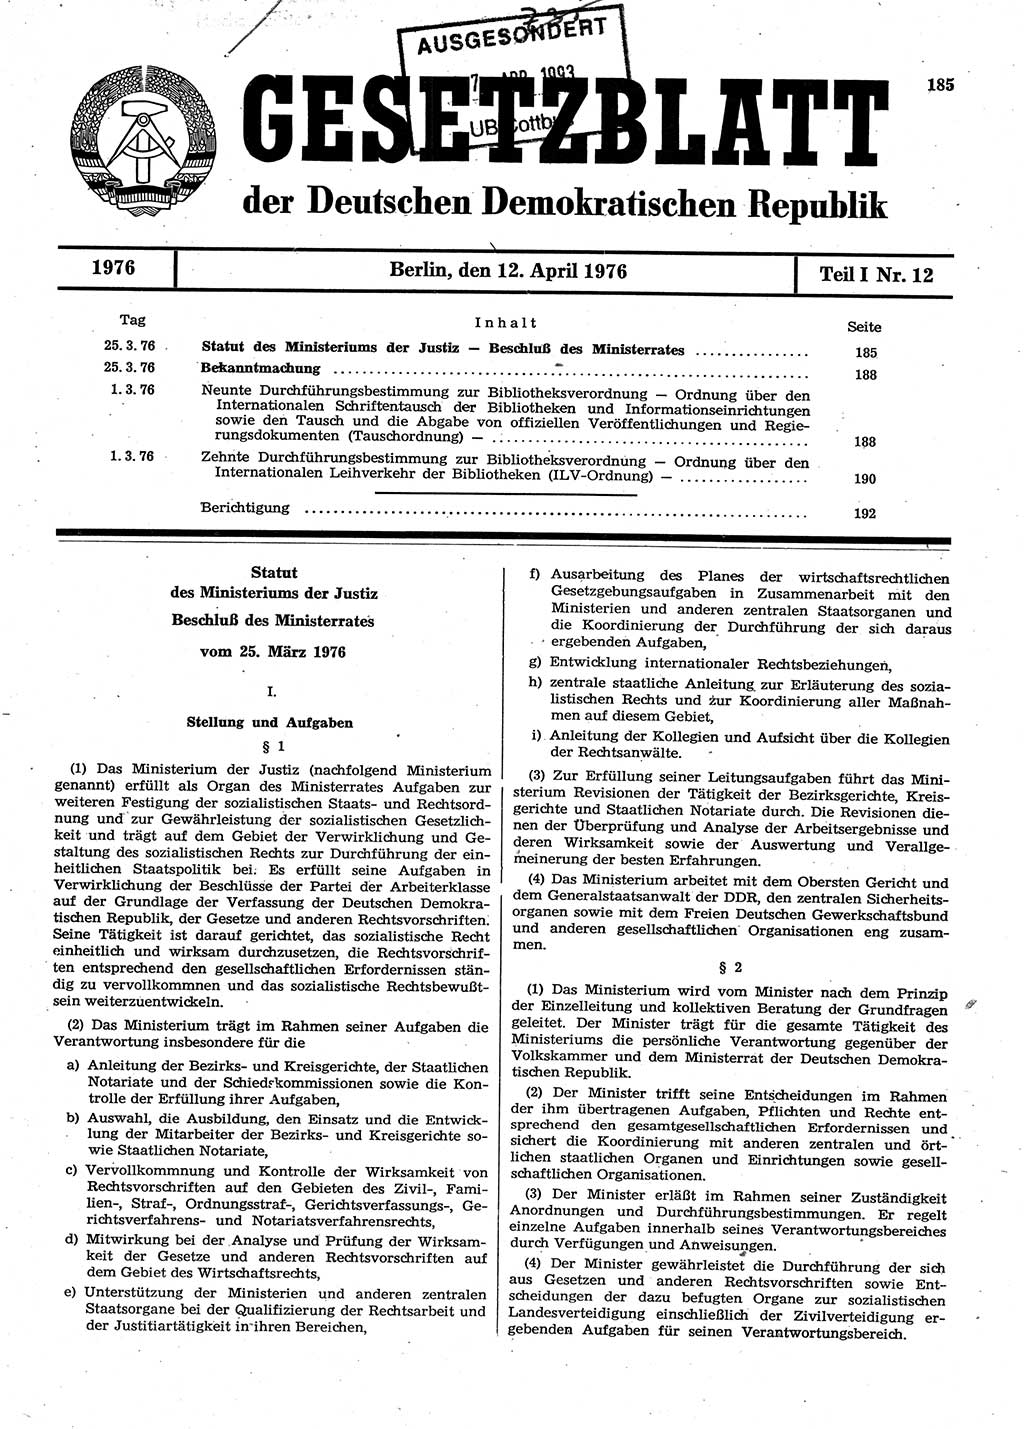 Gesetzblatt (GBl.) der Deutschen Demokratischen Republik (DDR) Teil Ⅰ 1976, Seite 185 (GBl. DDR Ⅰ 1976, S. 185)